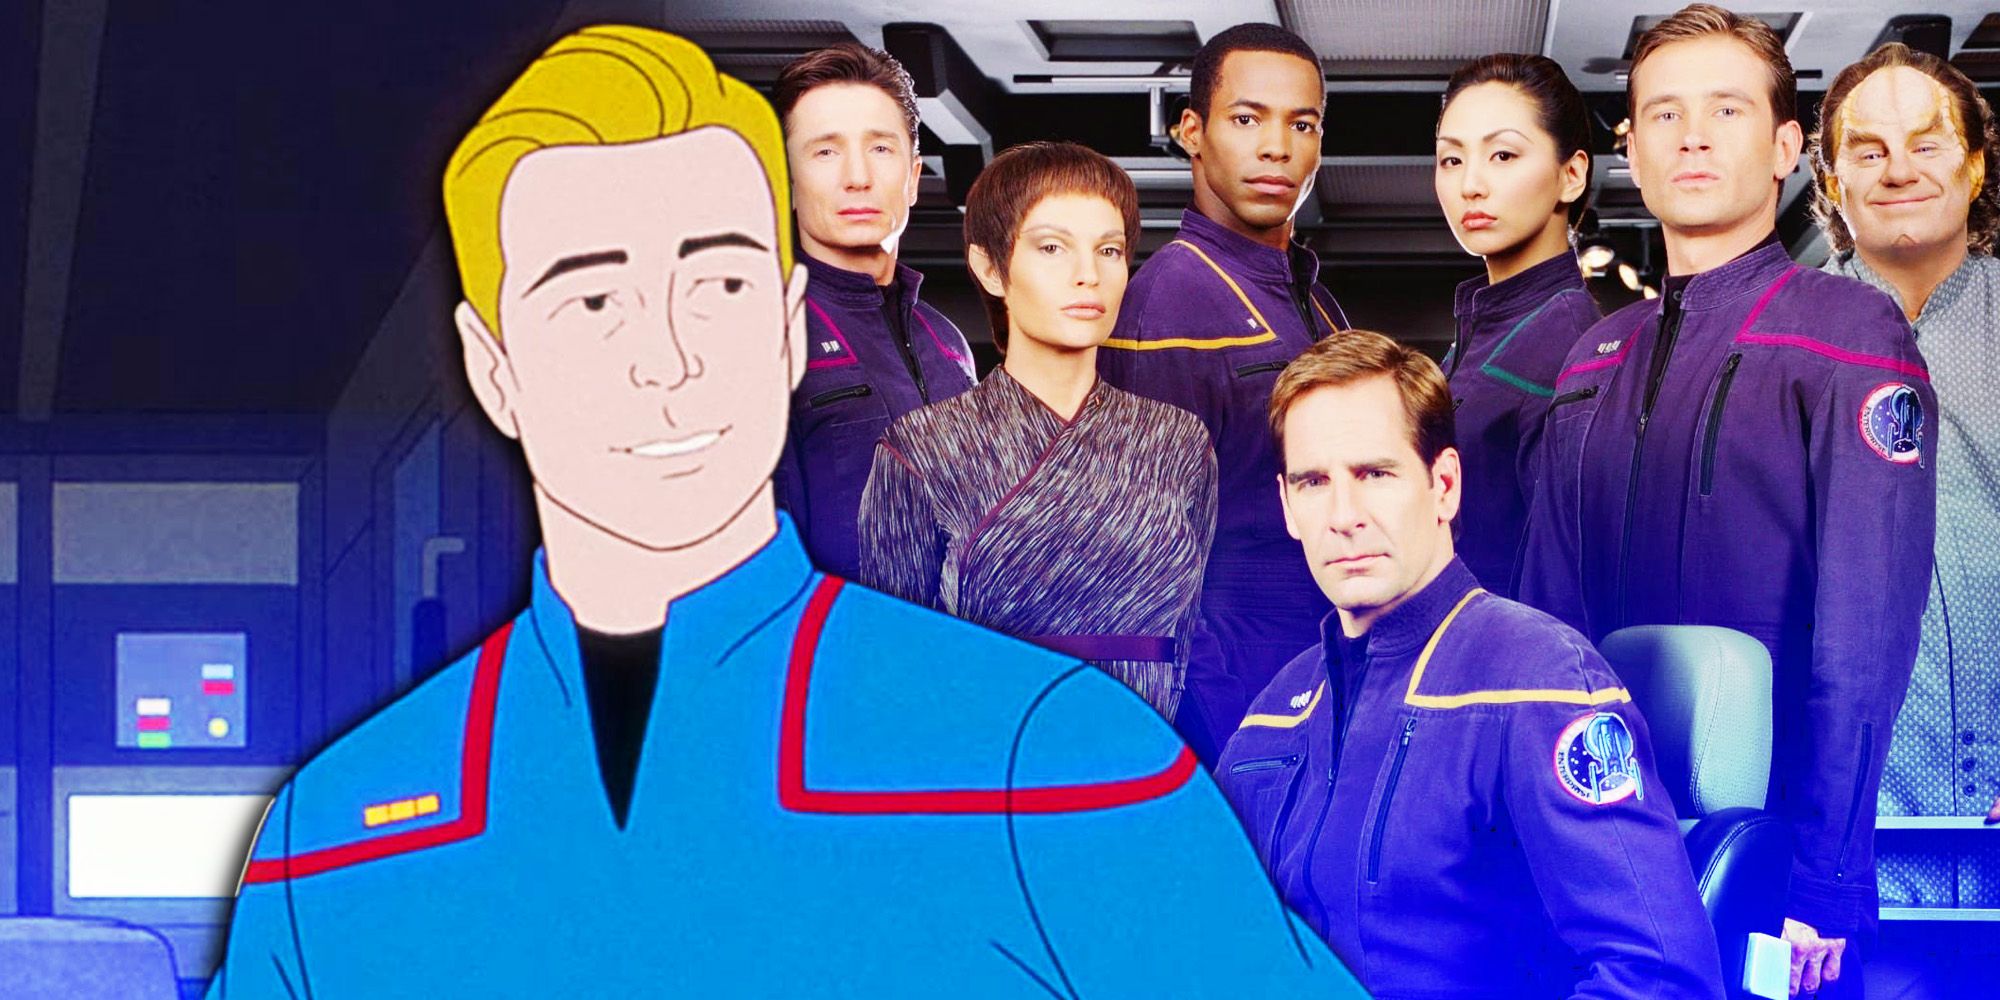 Cast of Star Trek- Enterprise and Trip Tucker animated from Star Trek- Very Short Treks